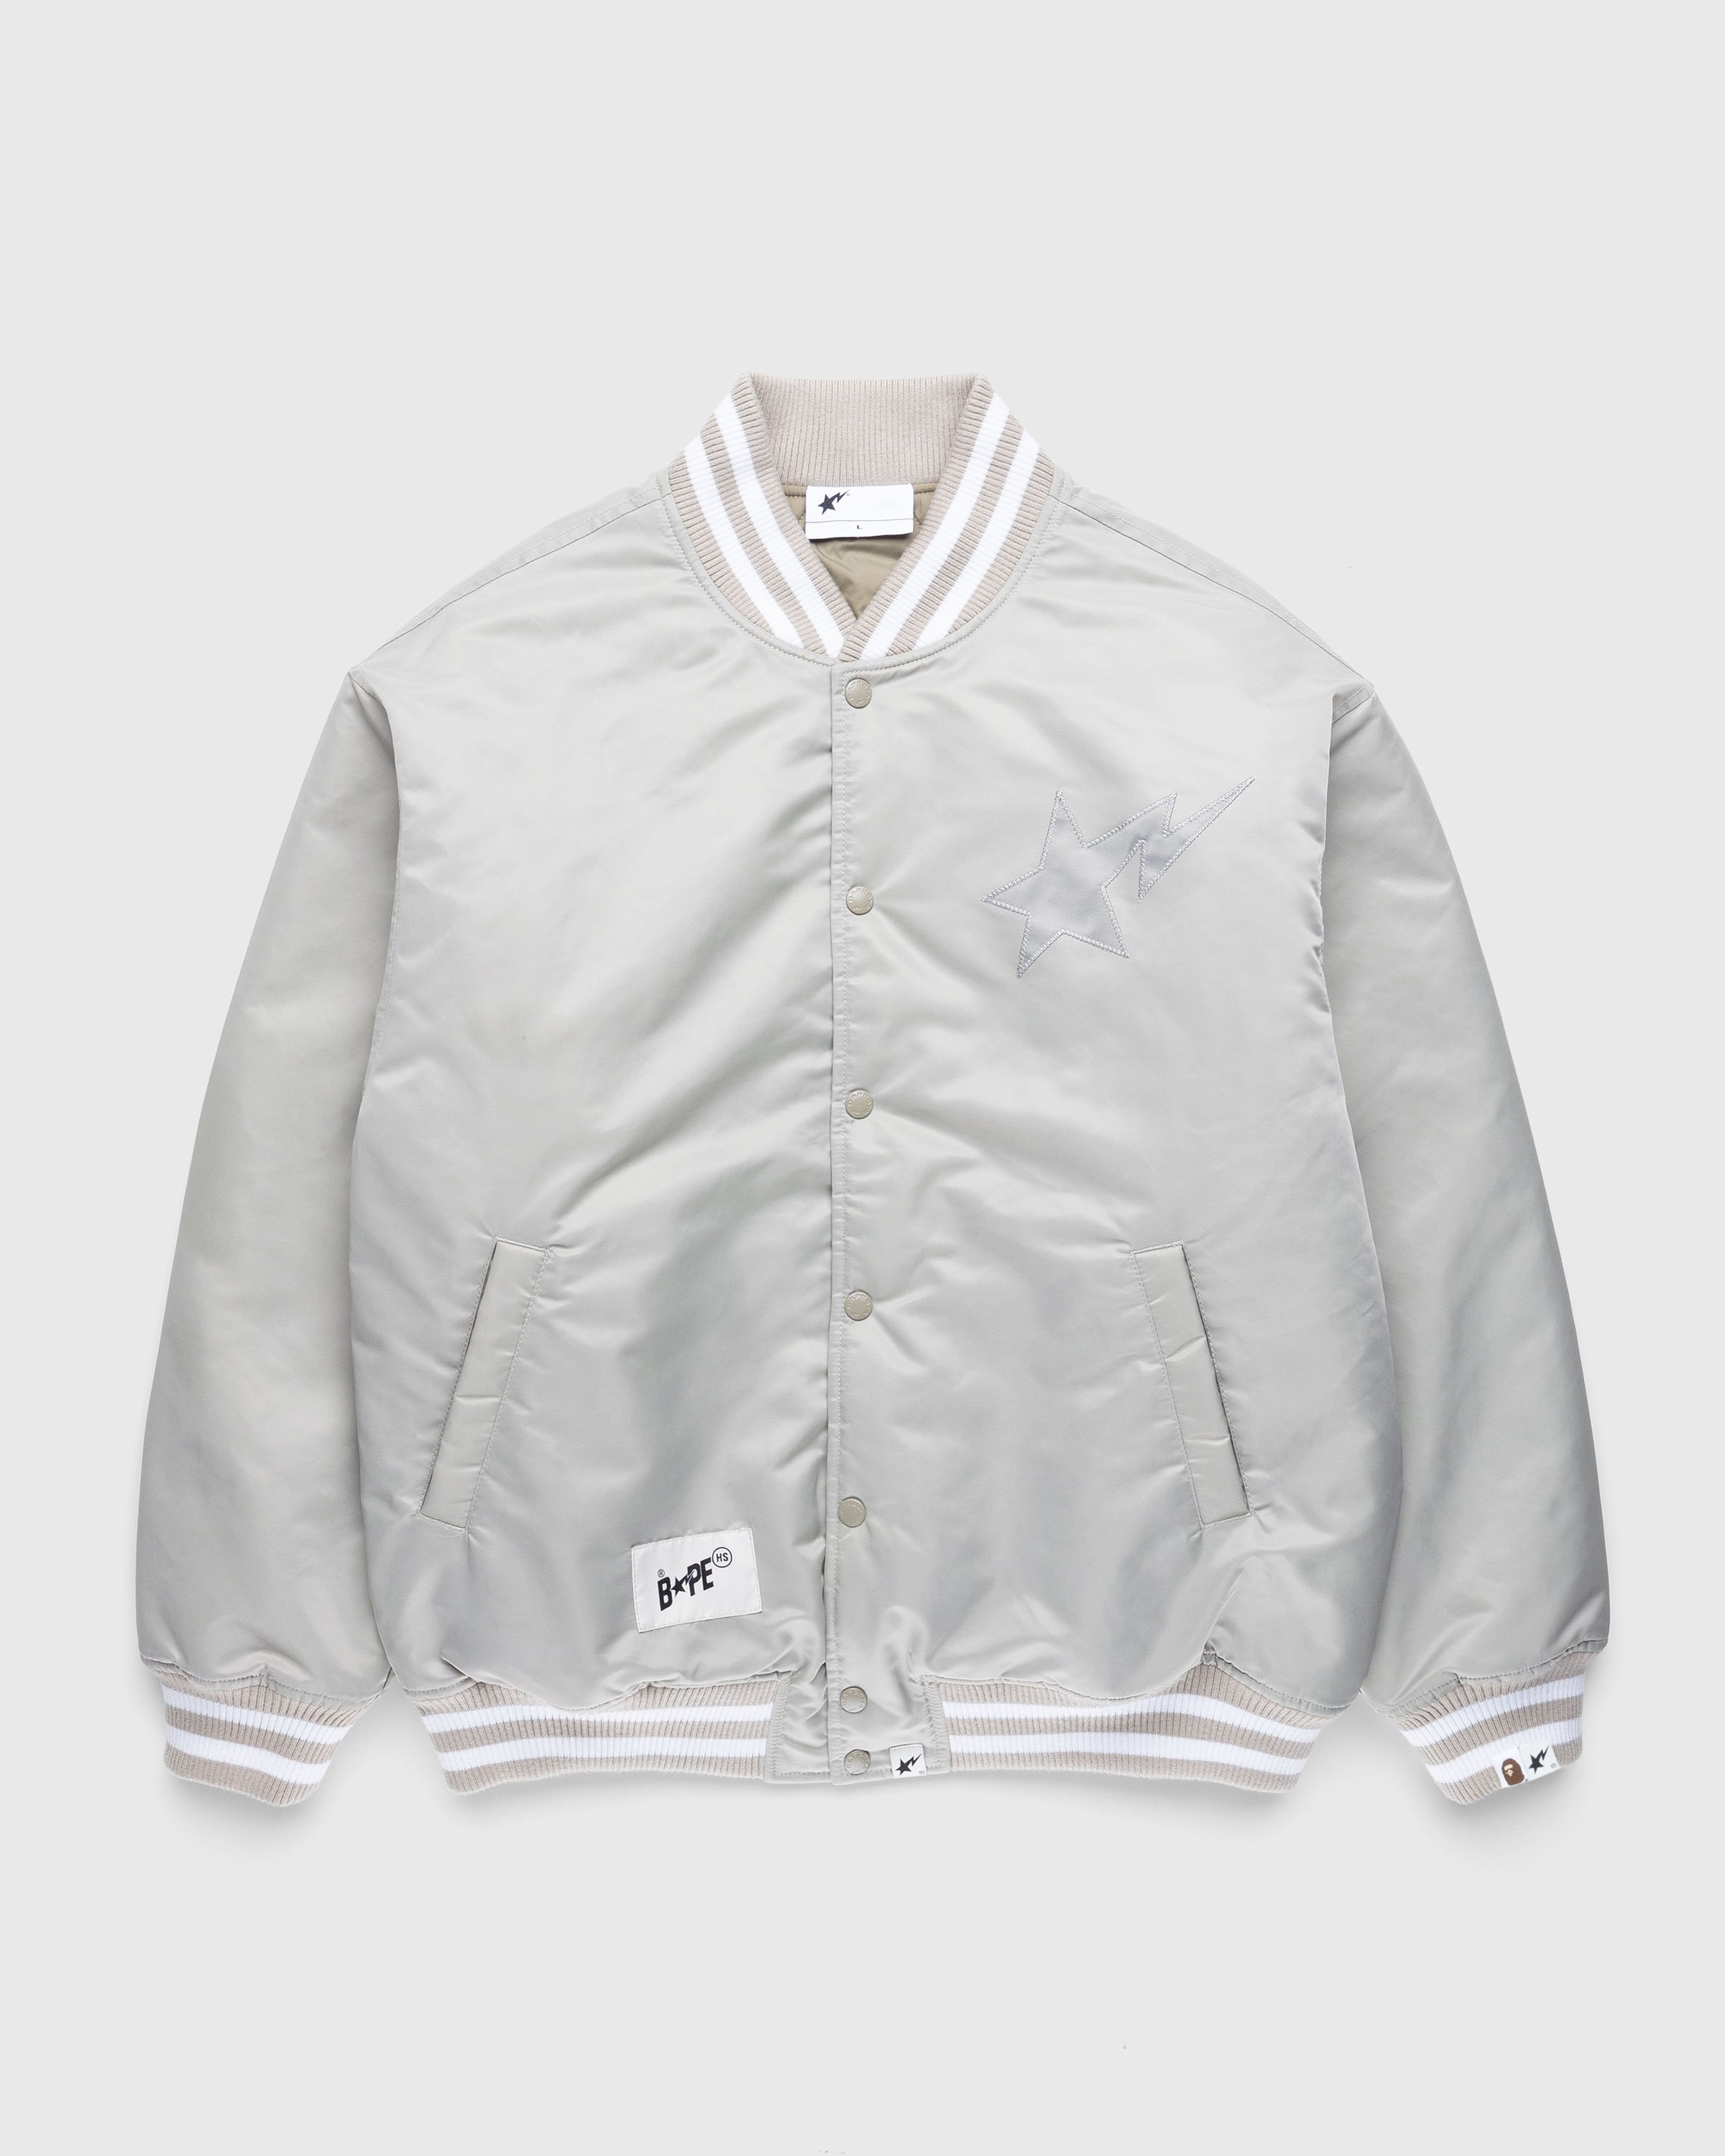 BAPE x Highsnobiety - Varsity Jacket Charcoal - Clothing - Grey - Image 1